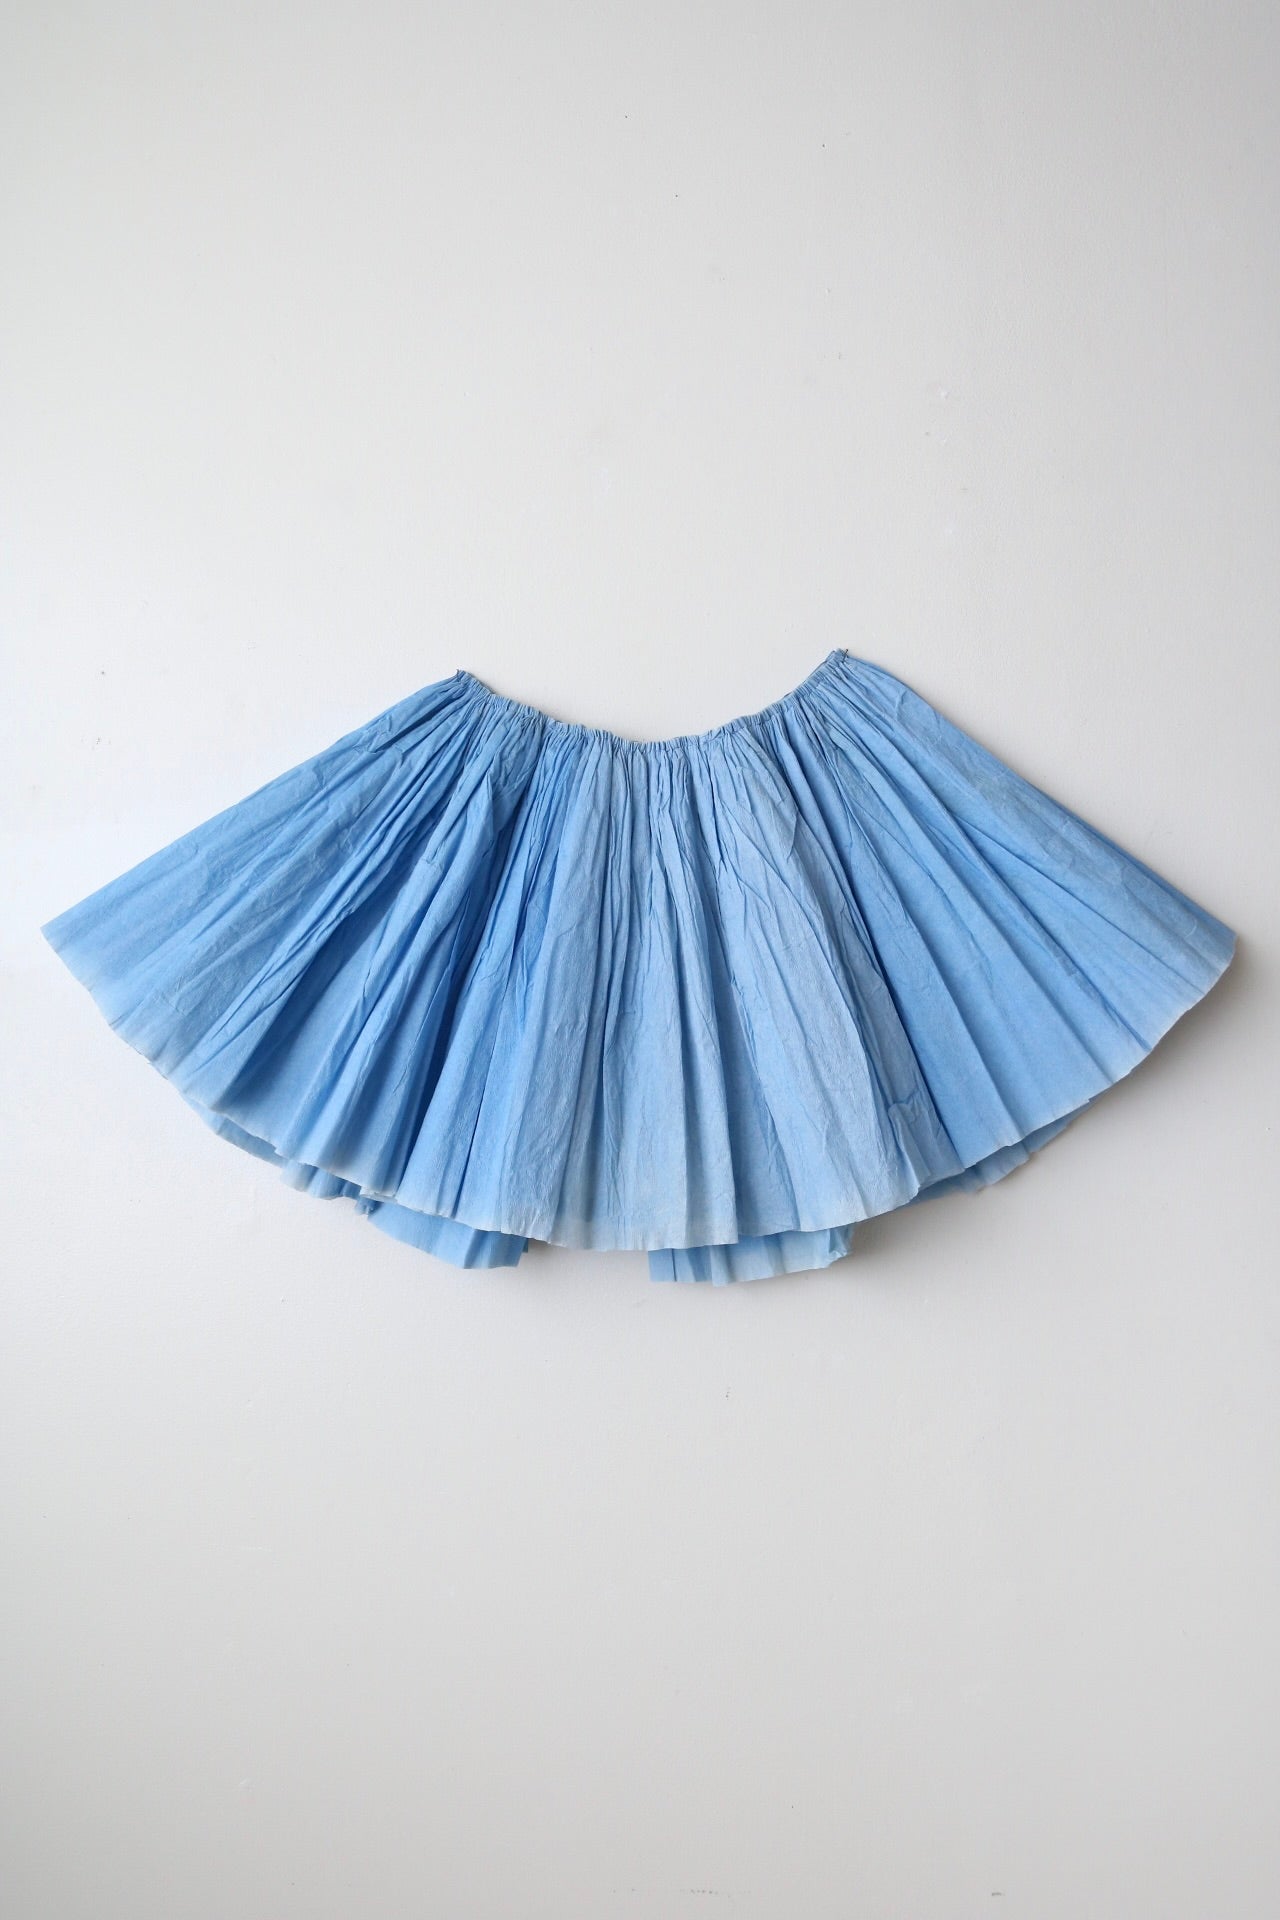 紙のスカート